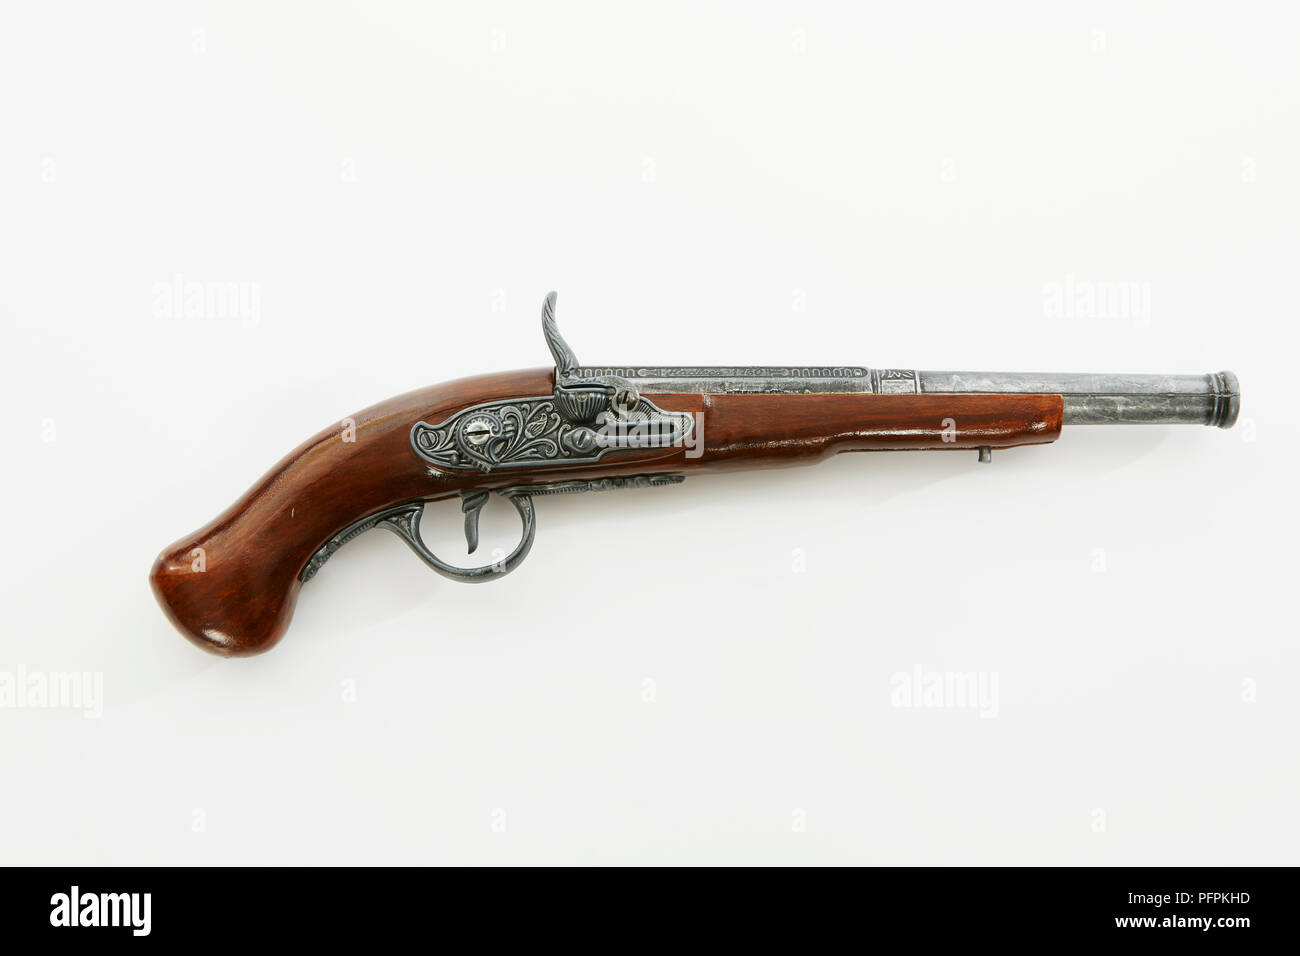 Replica musket Stock Photo